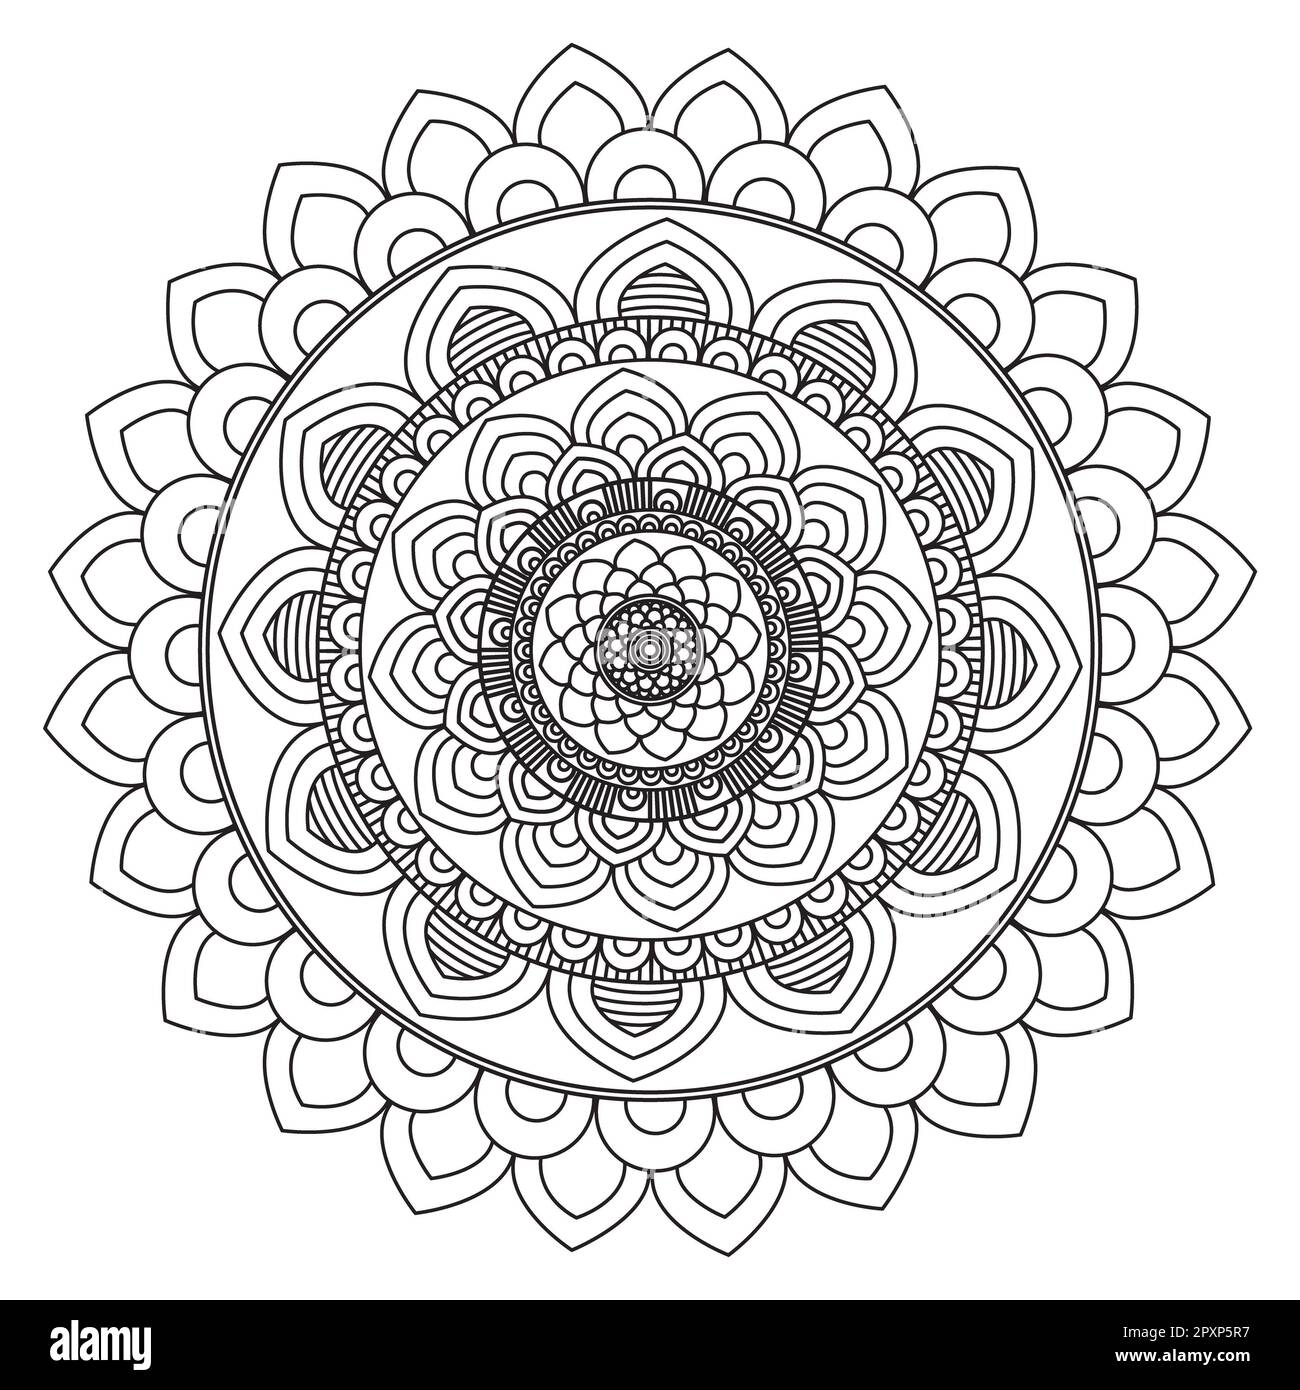 Entdecken Sie dieses fesselnde Schwarz-weiß-Mandala-Design mit komplizierten Blumenkonturen, die sich perfekt zum Ausmalen von Buchseiten oder als eigenständiges Design eignen Stockfoto